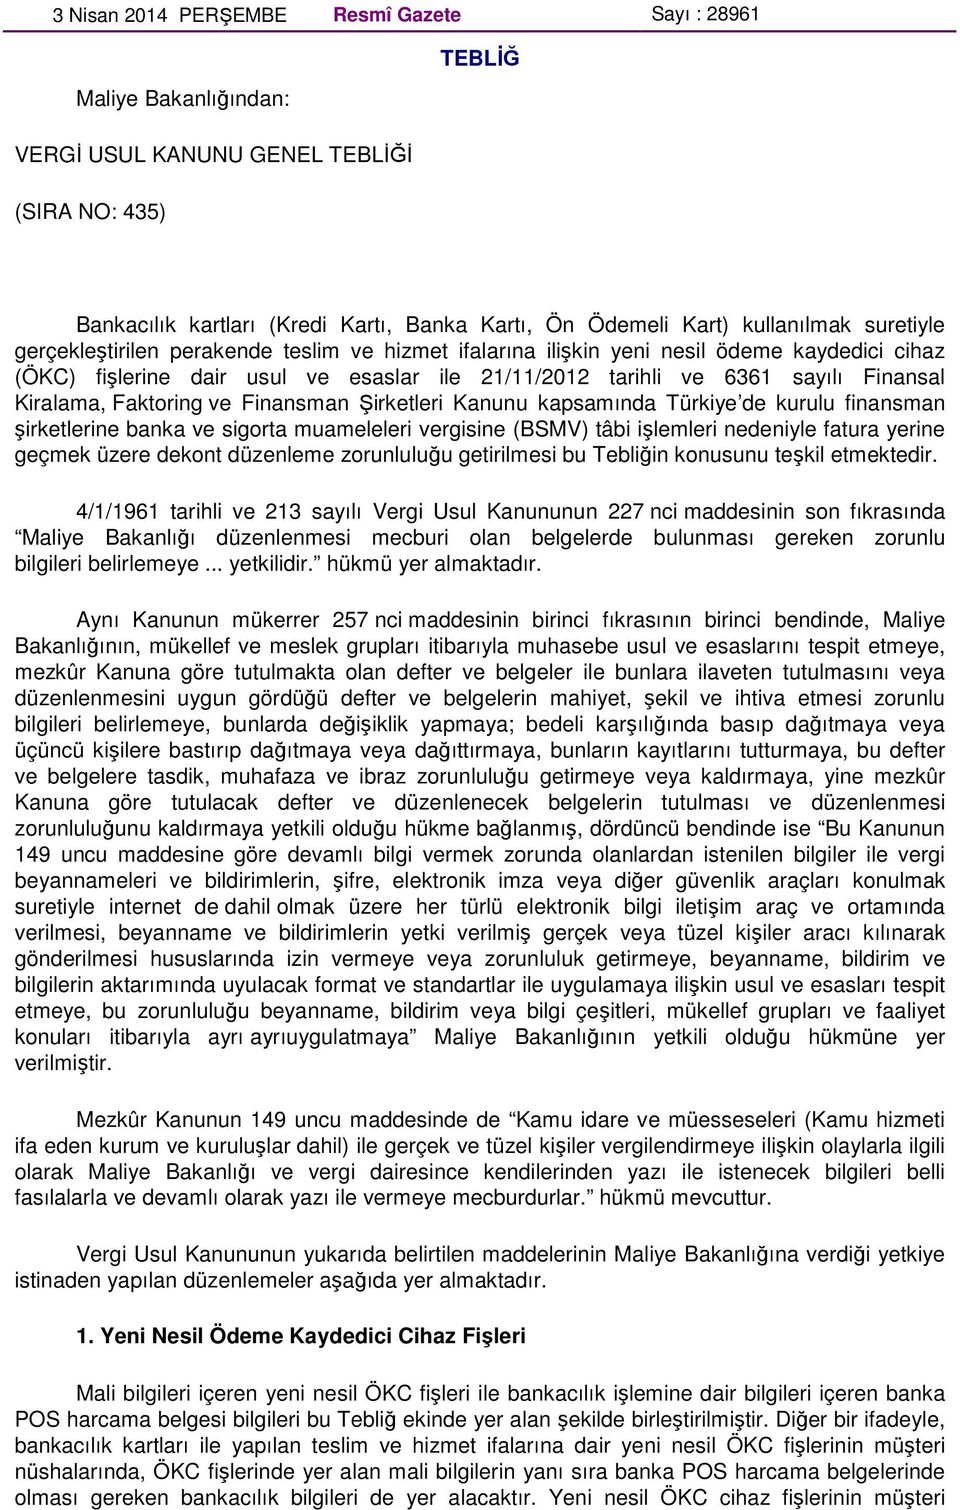 Faktoring ve Finansman Şirketleri Kanunu kapsamında Türkiye de kurulu finansman şirketlerine banka ve sigorta muameleleri vergisine (BSMV) tâbi işlemleri nedeniyle fatura yerine geçmek üzere dekont